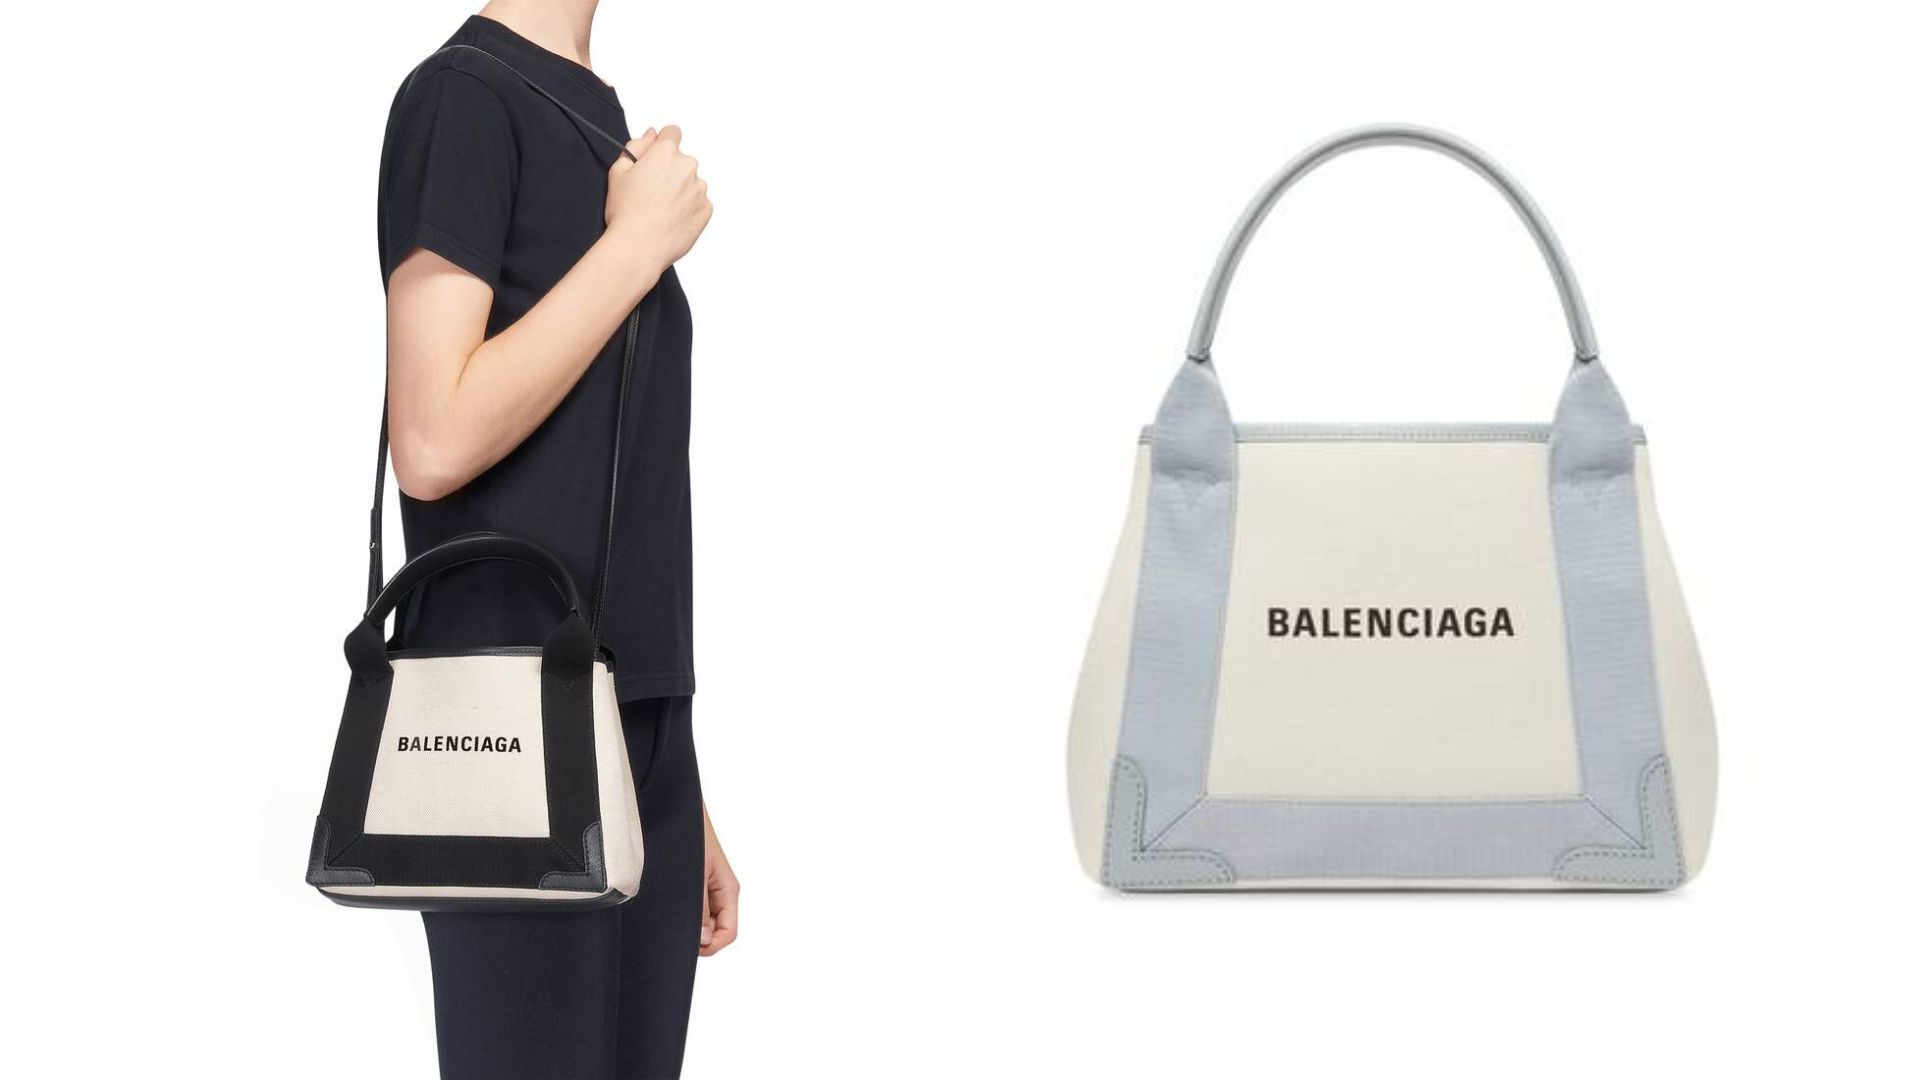 Your Bag Spa » BALENCIAGA VILLE BAG REVIEW